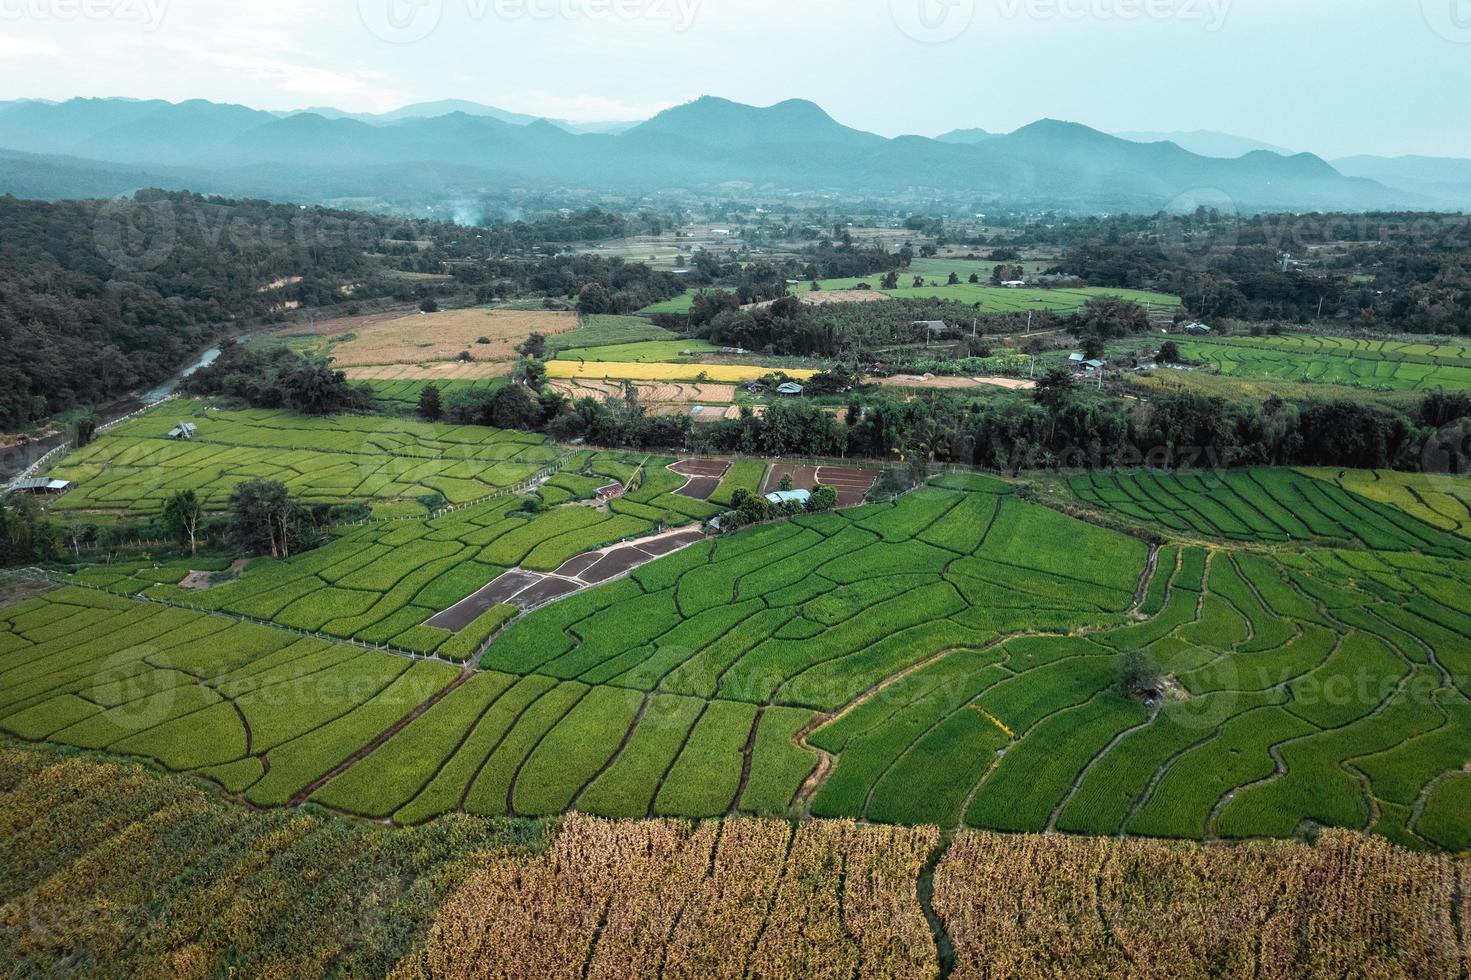 rizières vertes et agriculture vue grand angle photo